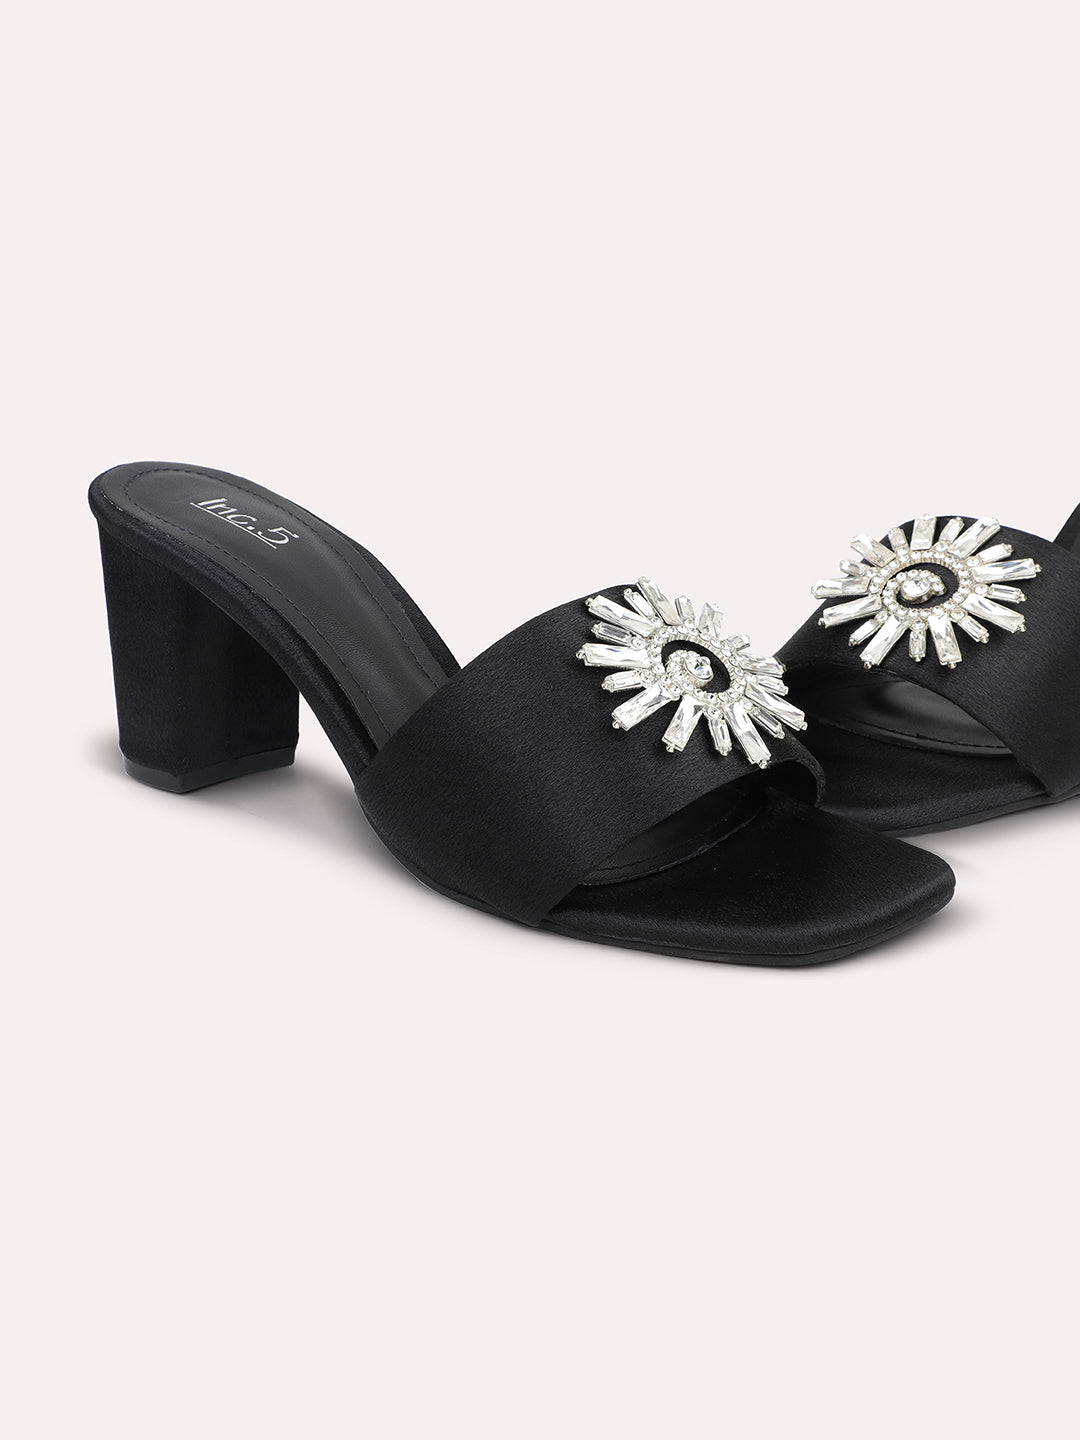 Buy Inc.5 Black Embellished Slim Heels Online at Best Prices in India -  JioMart.